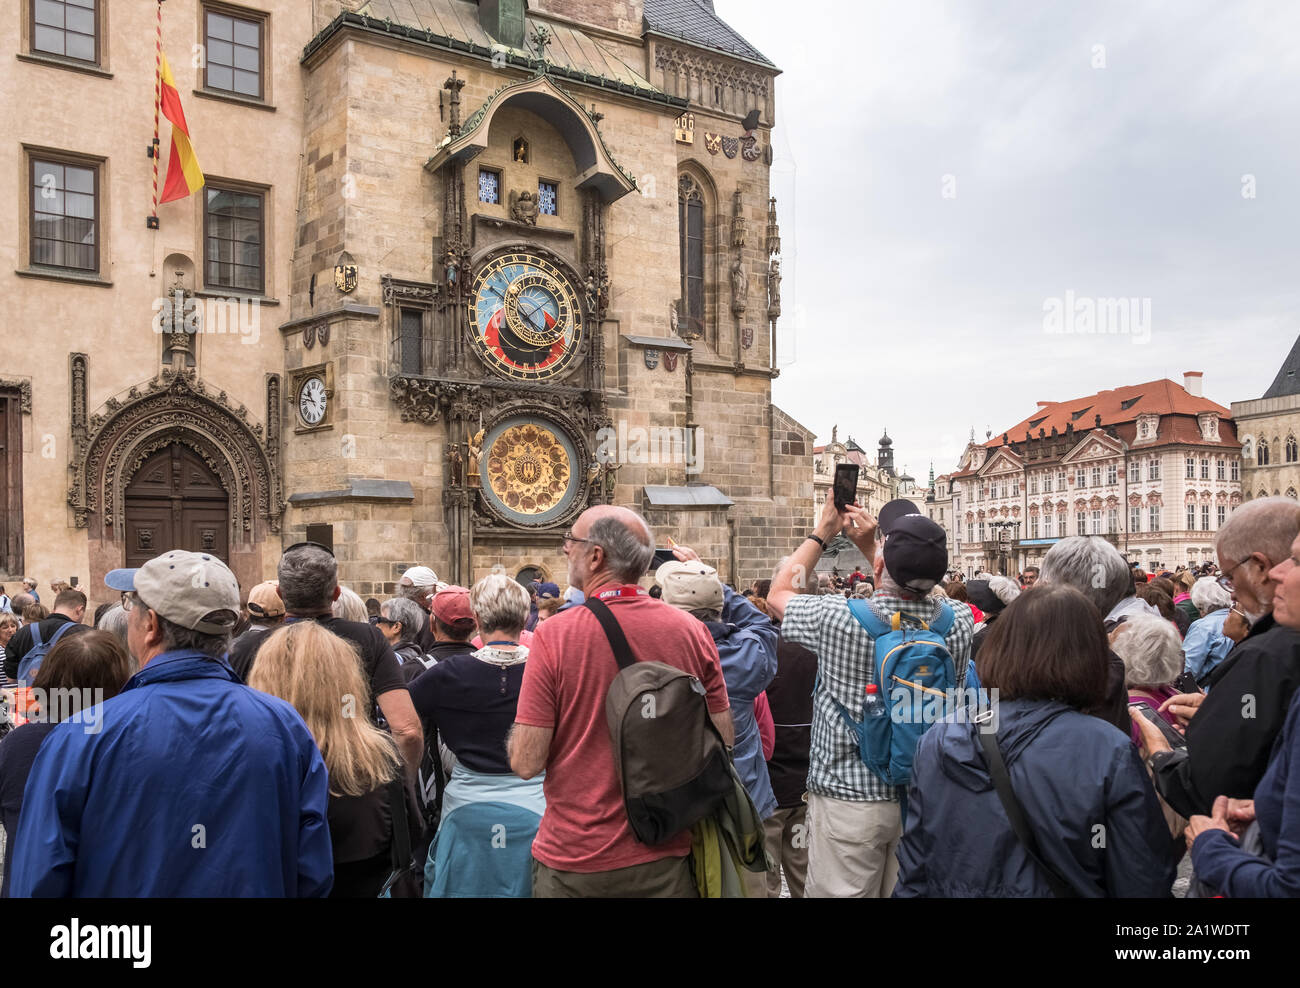 La folla di turisti si riuniscono presso la medievale orologio astronomico, una popolare attrazione turistica in Piazza della Città Vecchia di Praga, Repubblica Ceca. Foto Stock